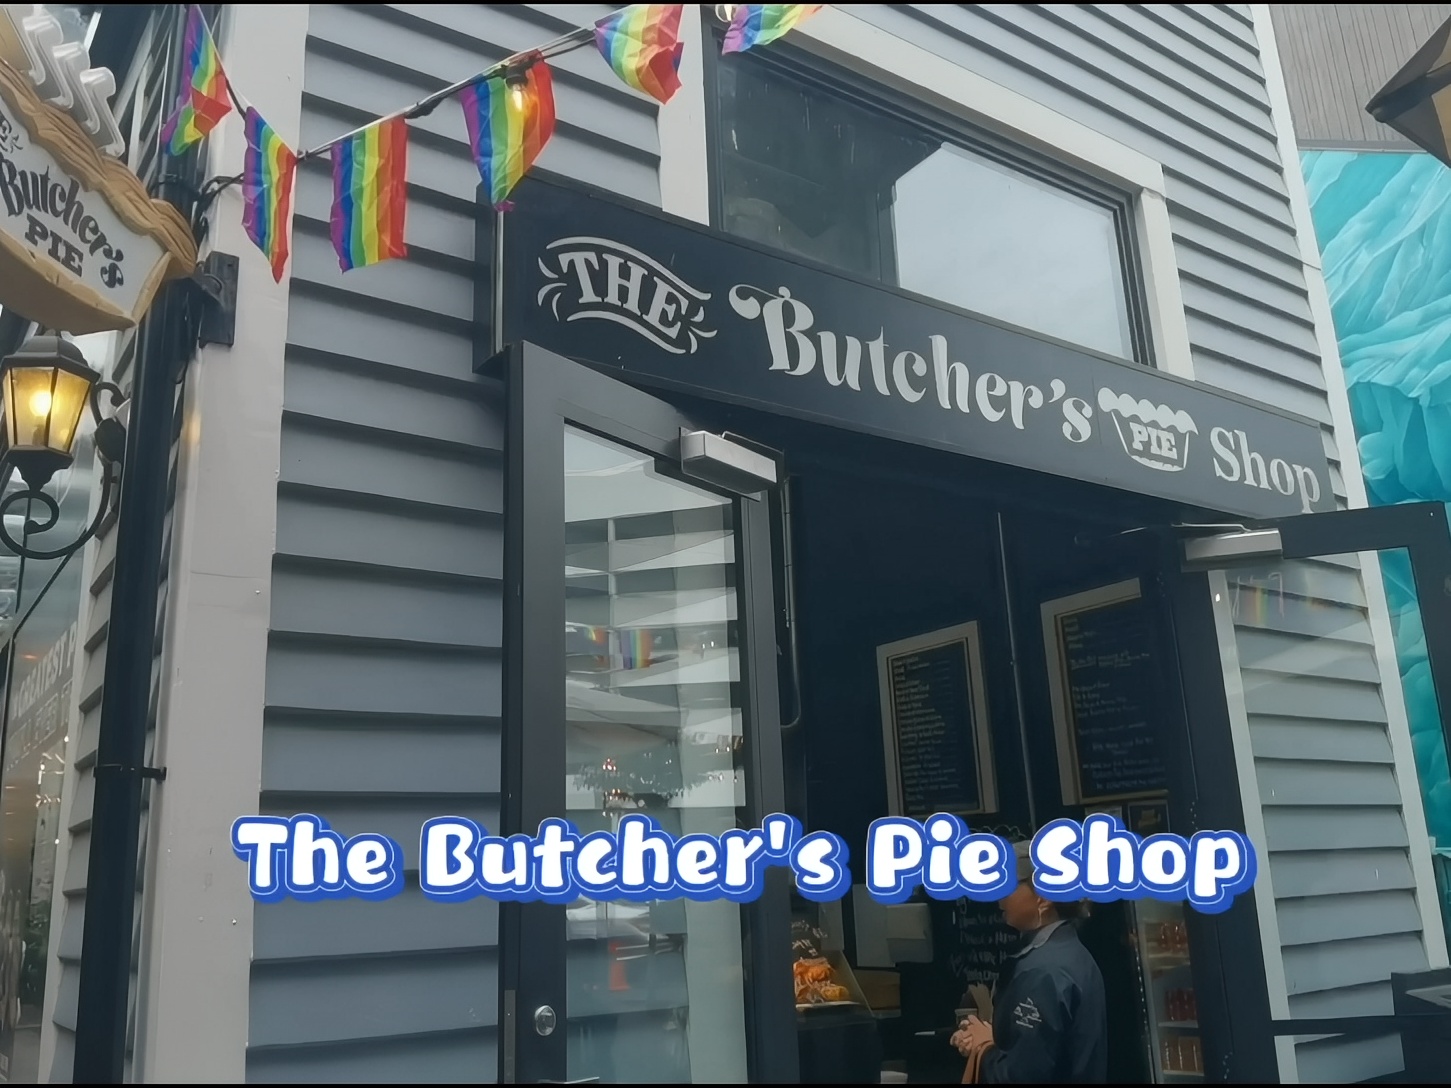 The Butcher's Pie Shop